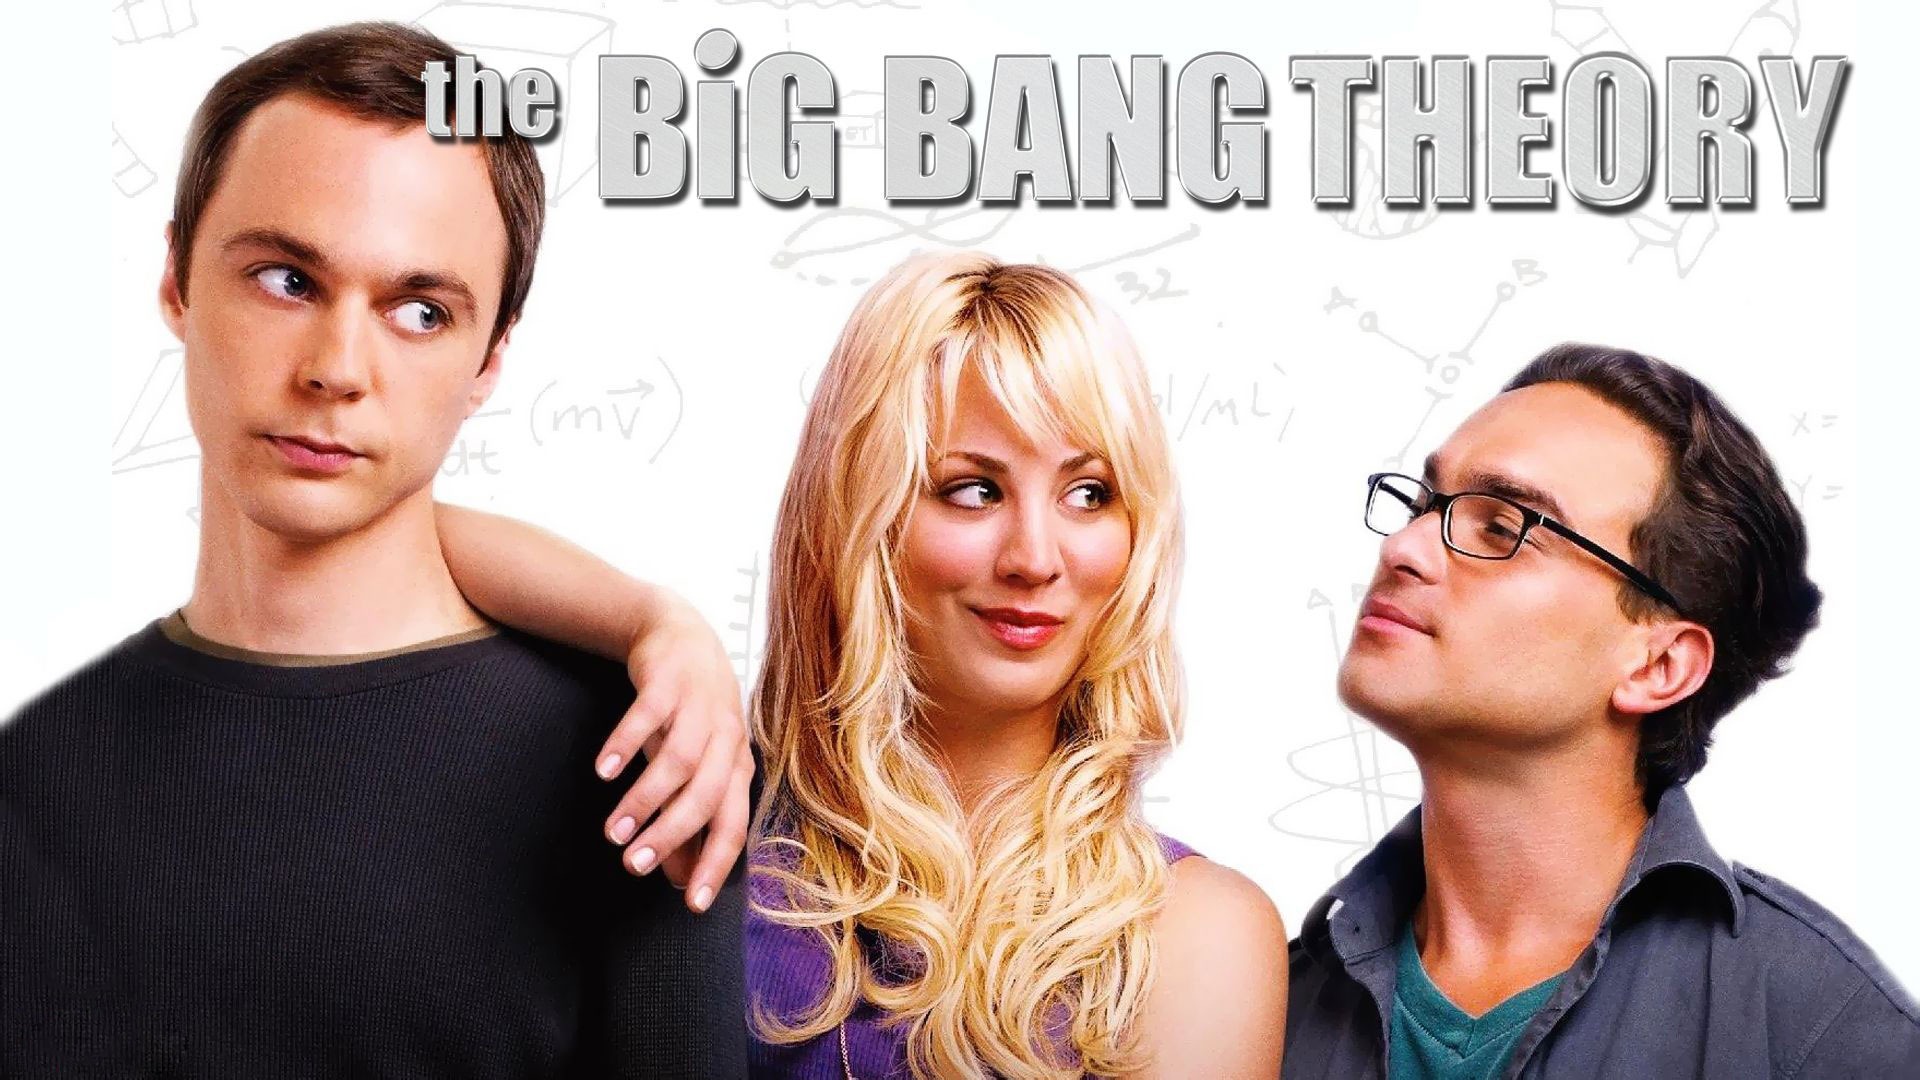 The Big Bang Theory 生活大爆炸電視劇高清壁紙 #21 - 1920x1080